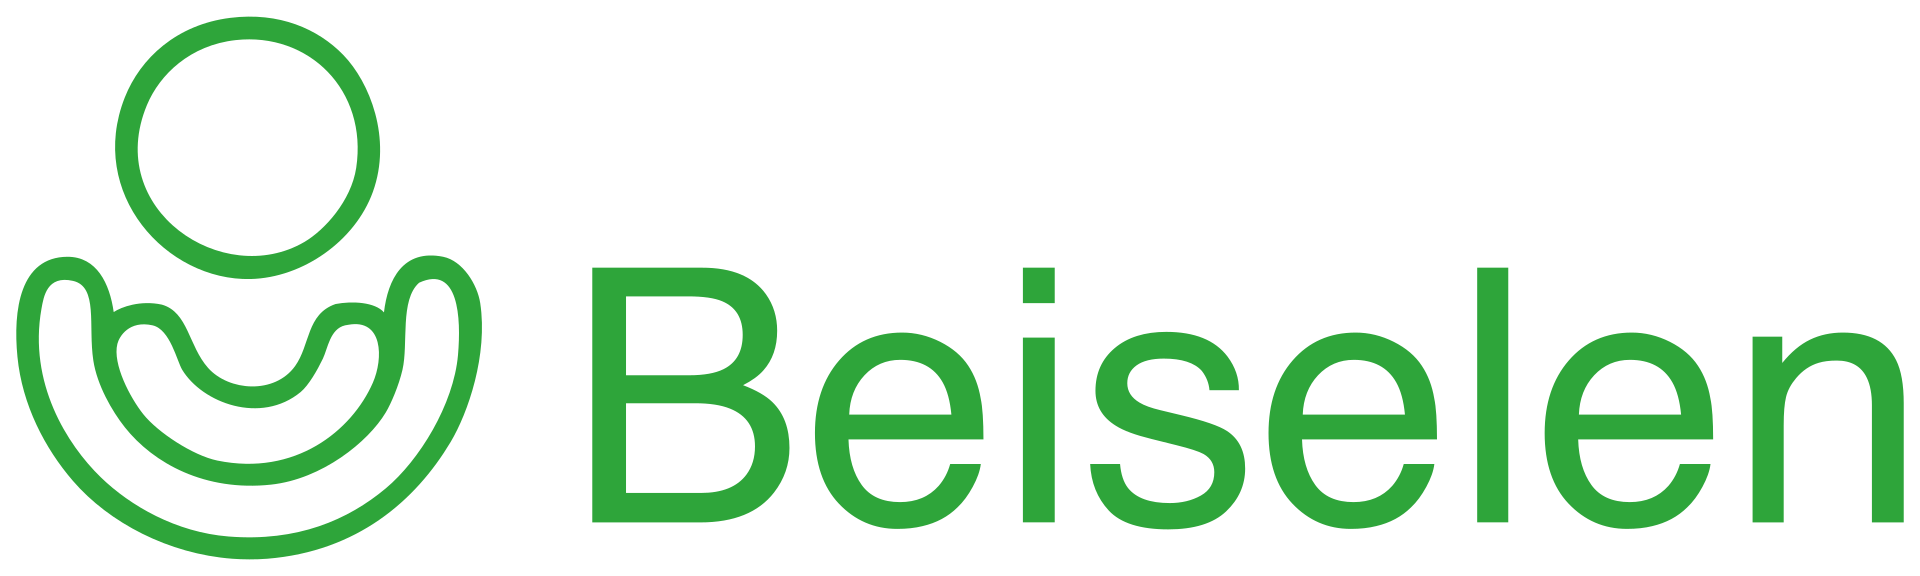 1920px-Beiselen_logo.svg